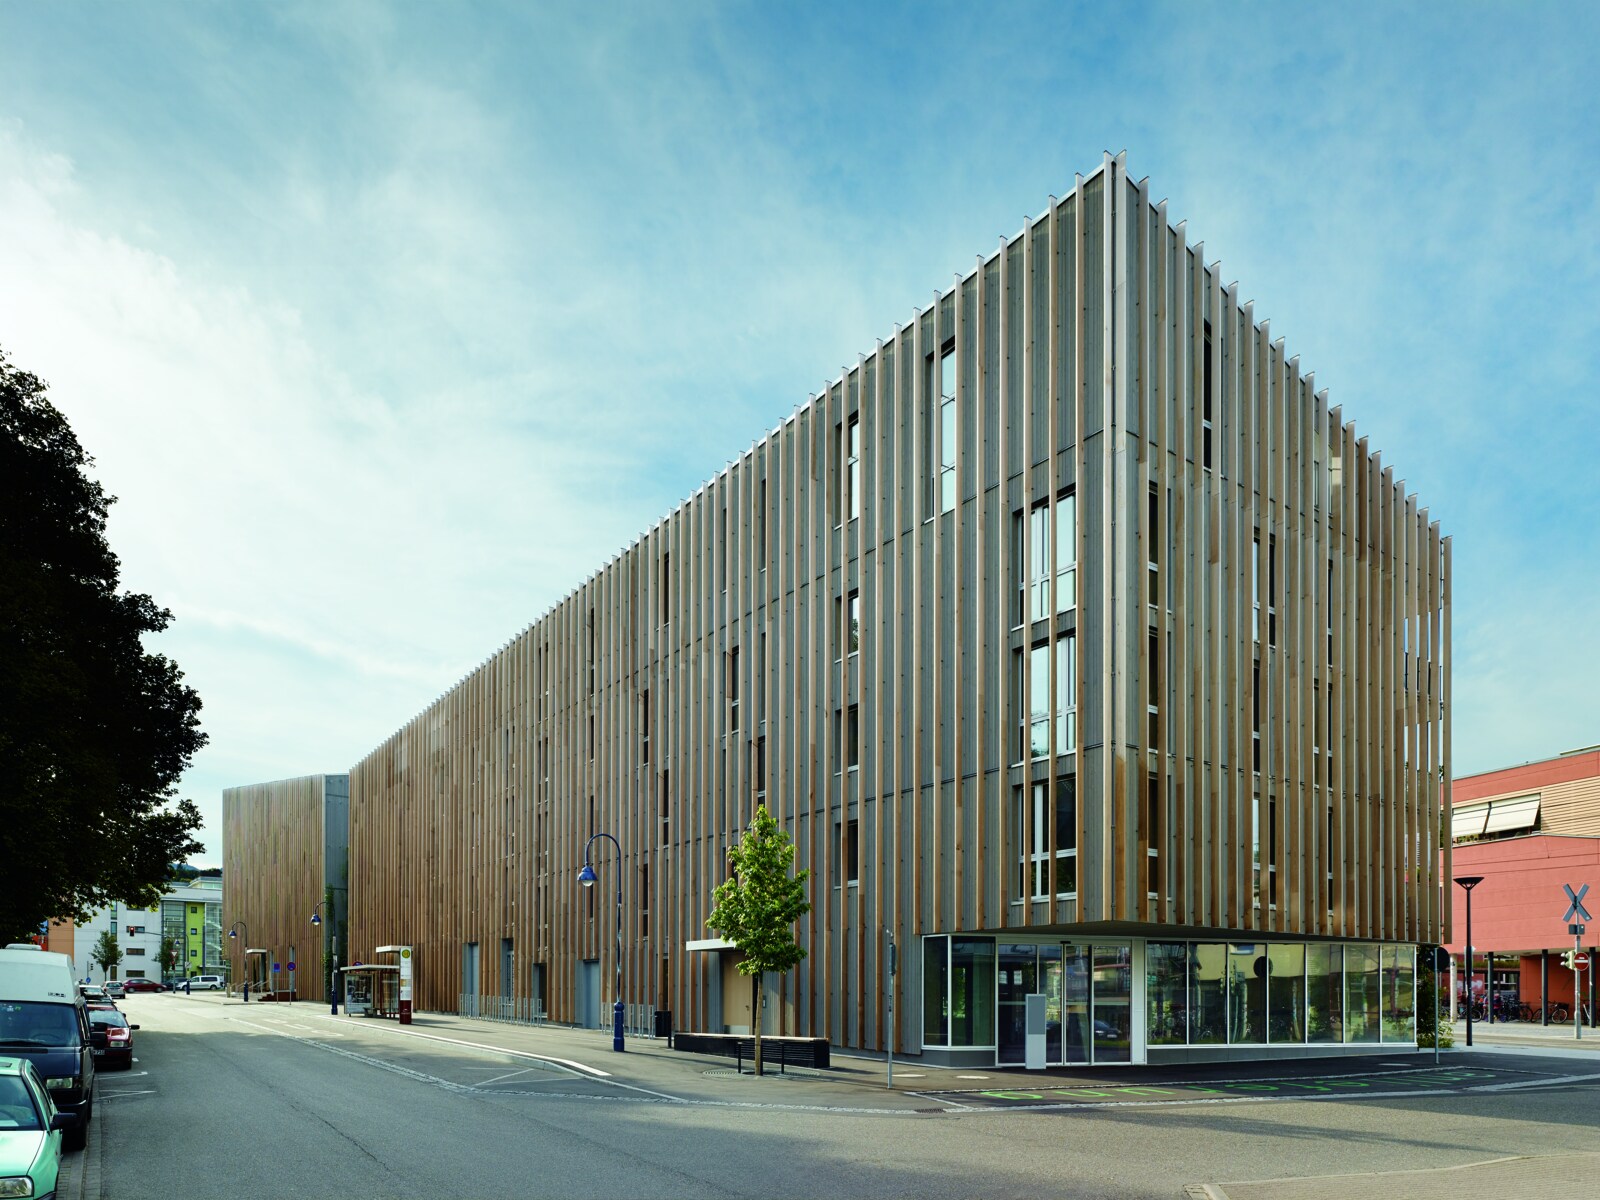 Bild eines gemischt genutzten Gebäudes mit Holzfassade